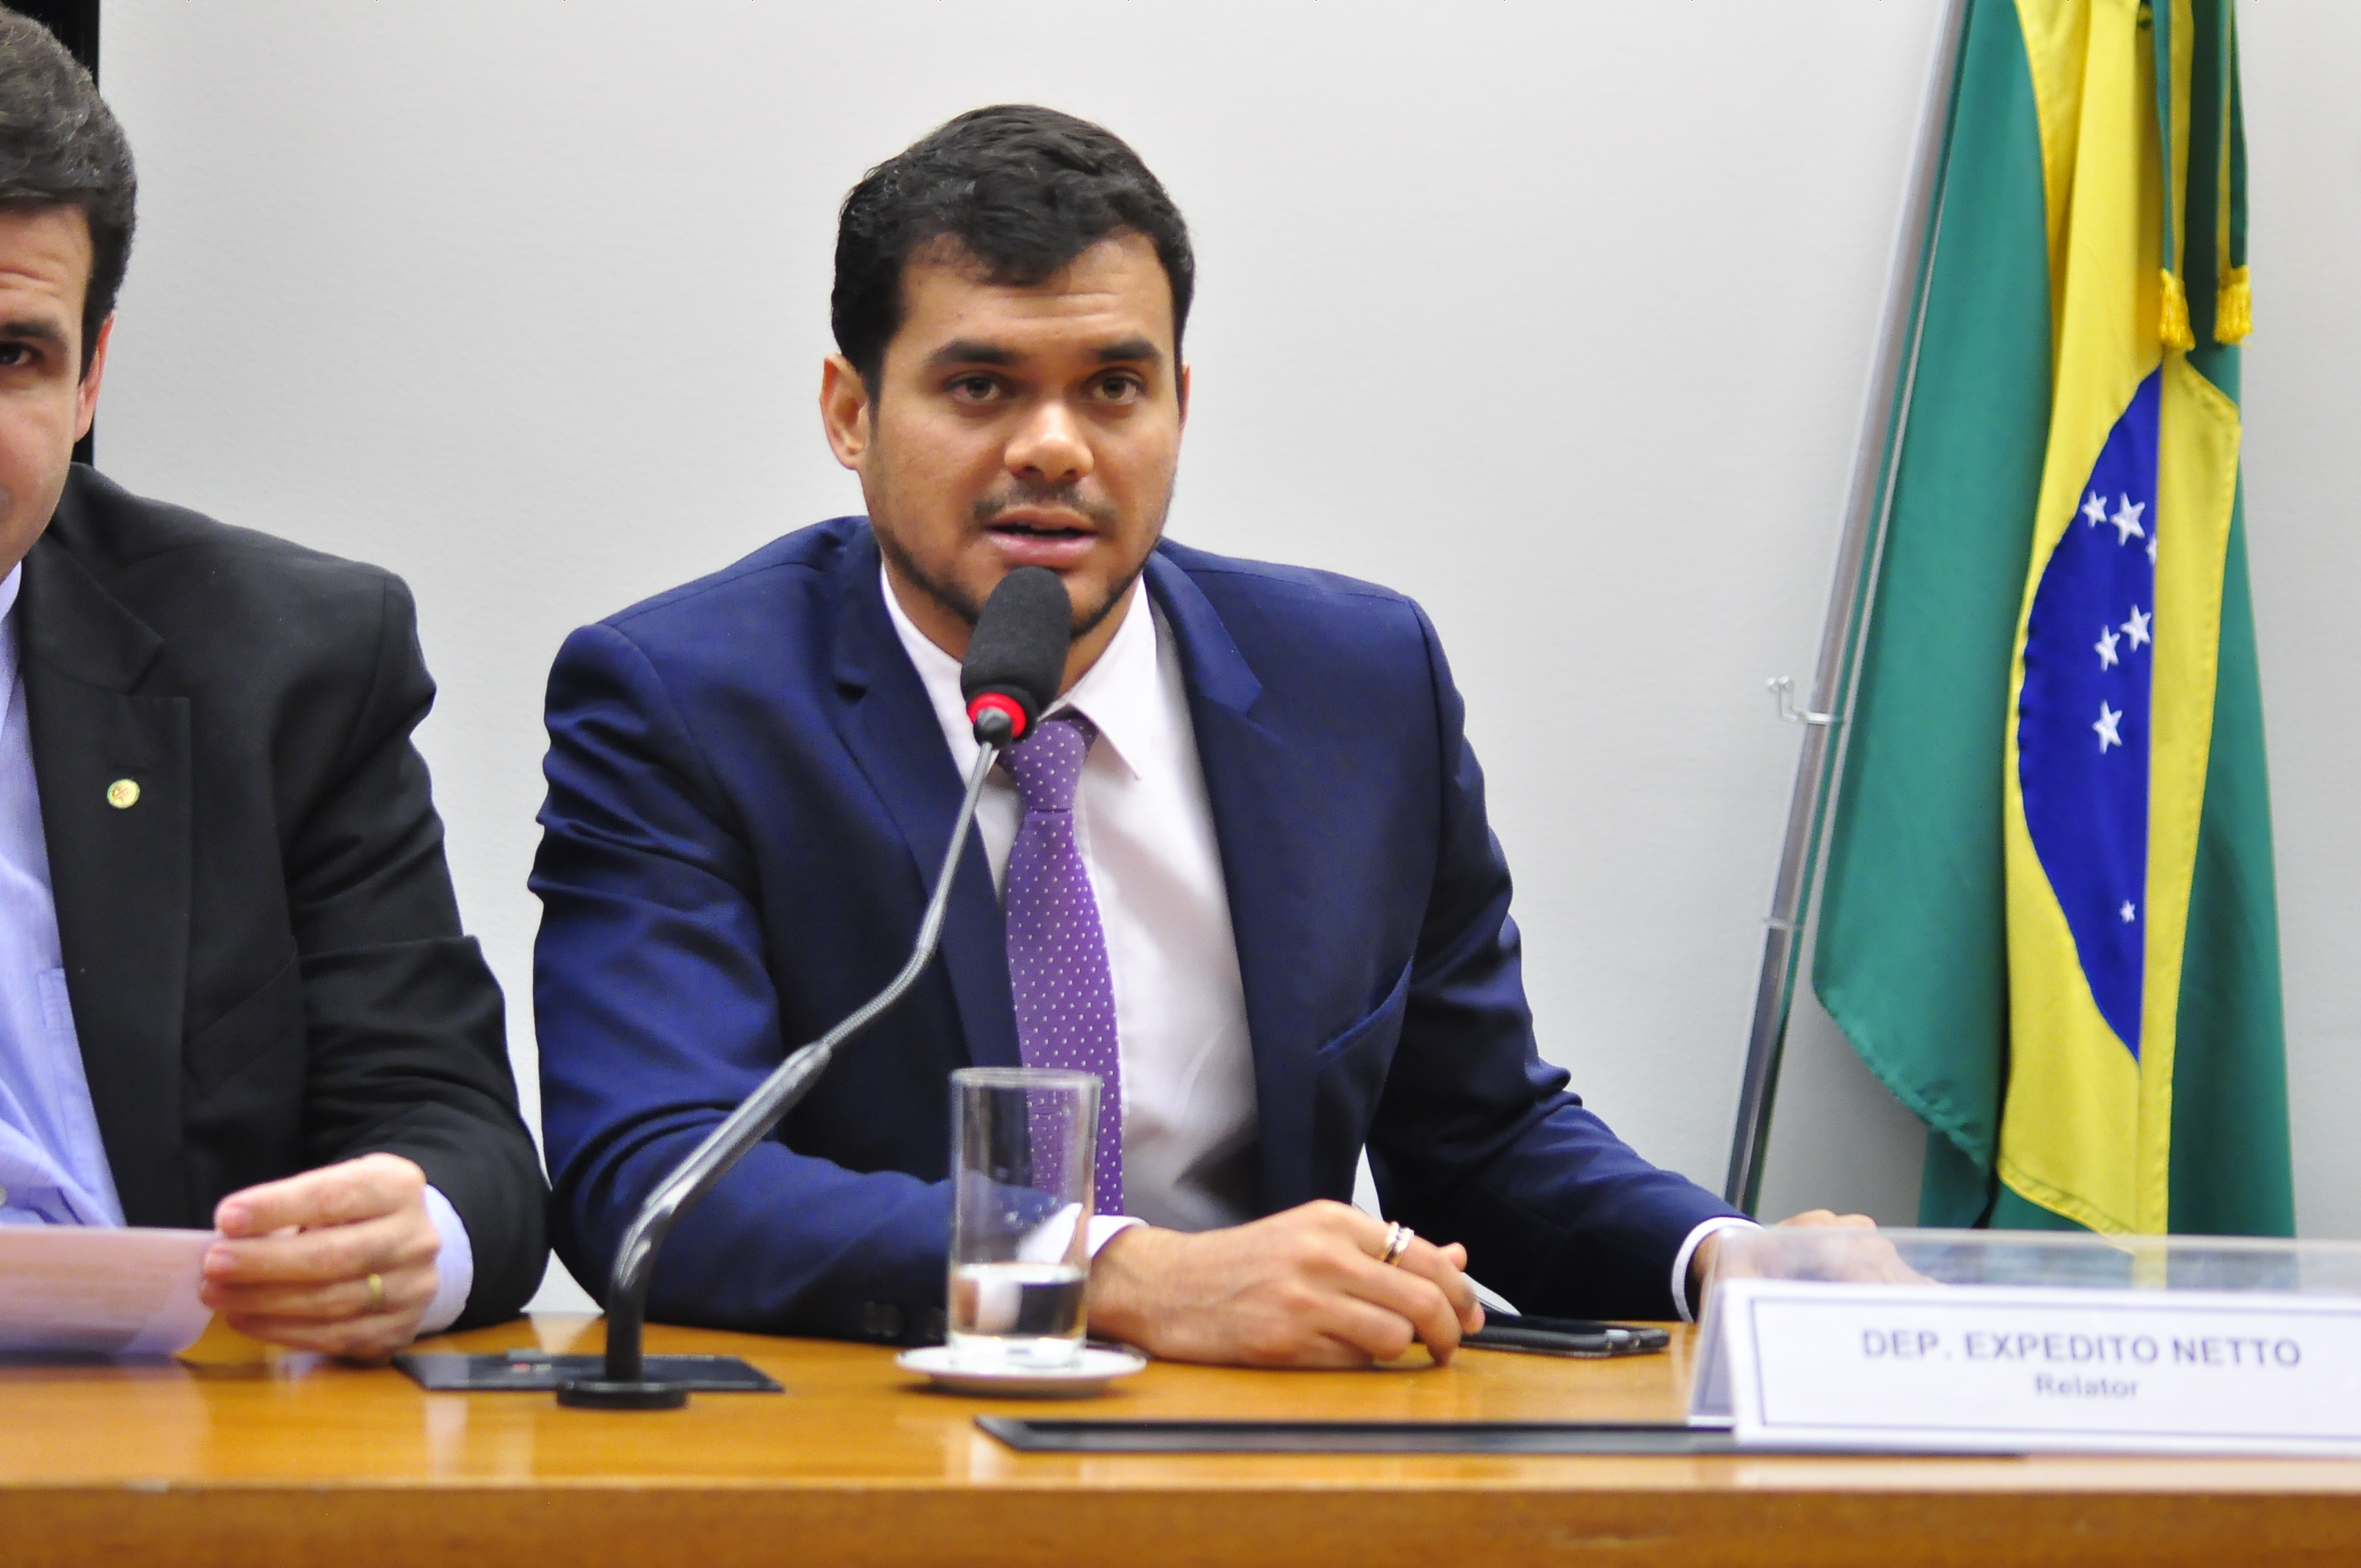 Deputado Expedito Netto comemora liberação de R$ 1,6 milhão de recursos para a saúde de Rondônia